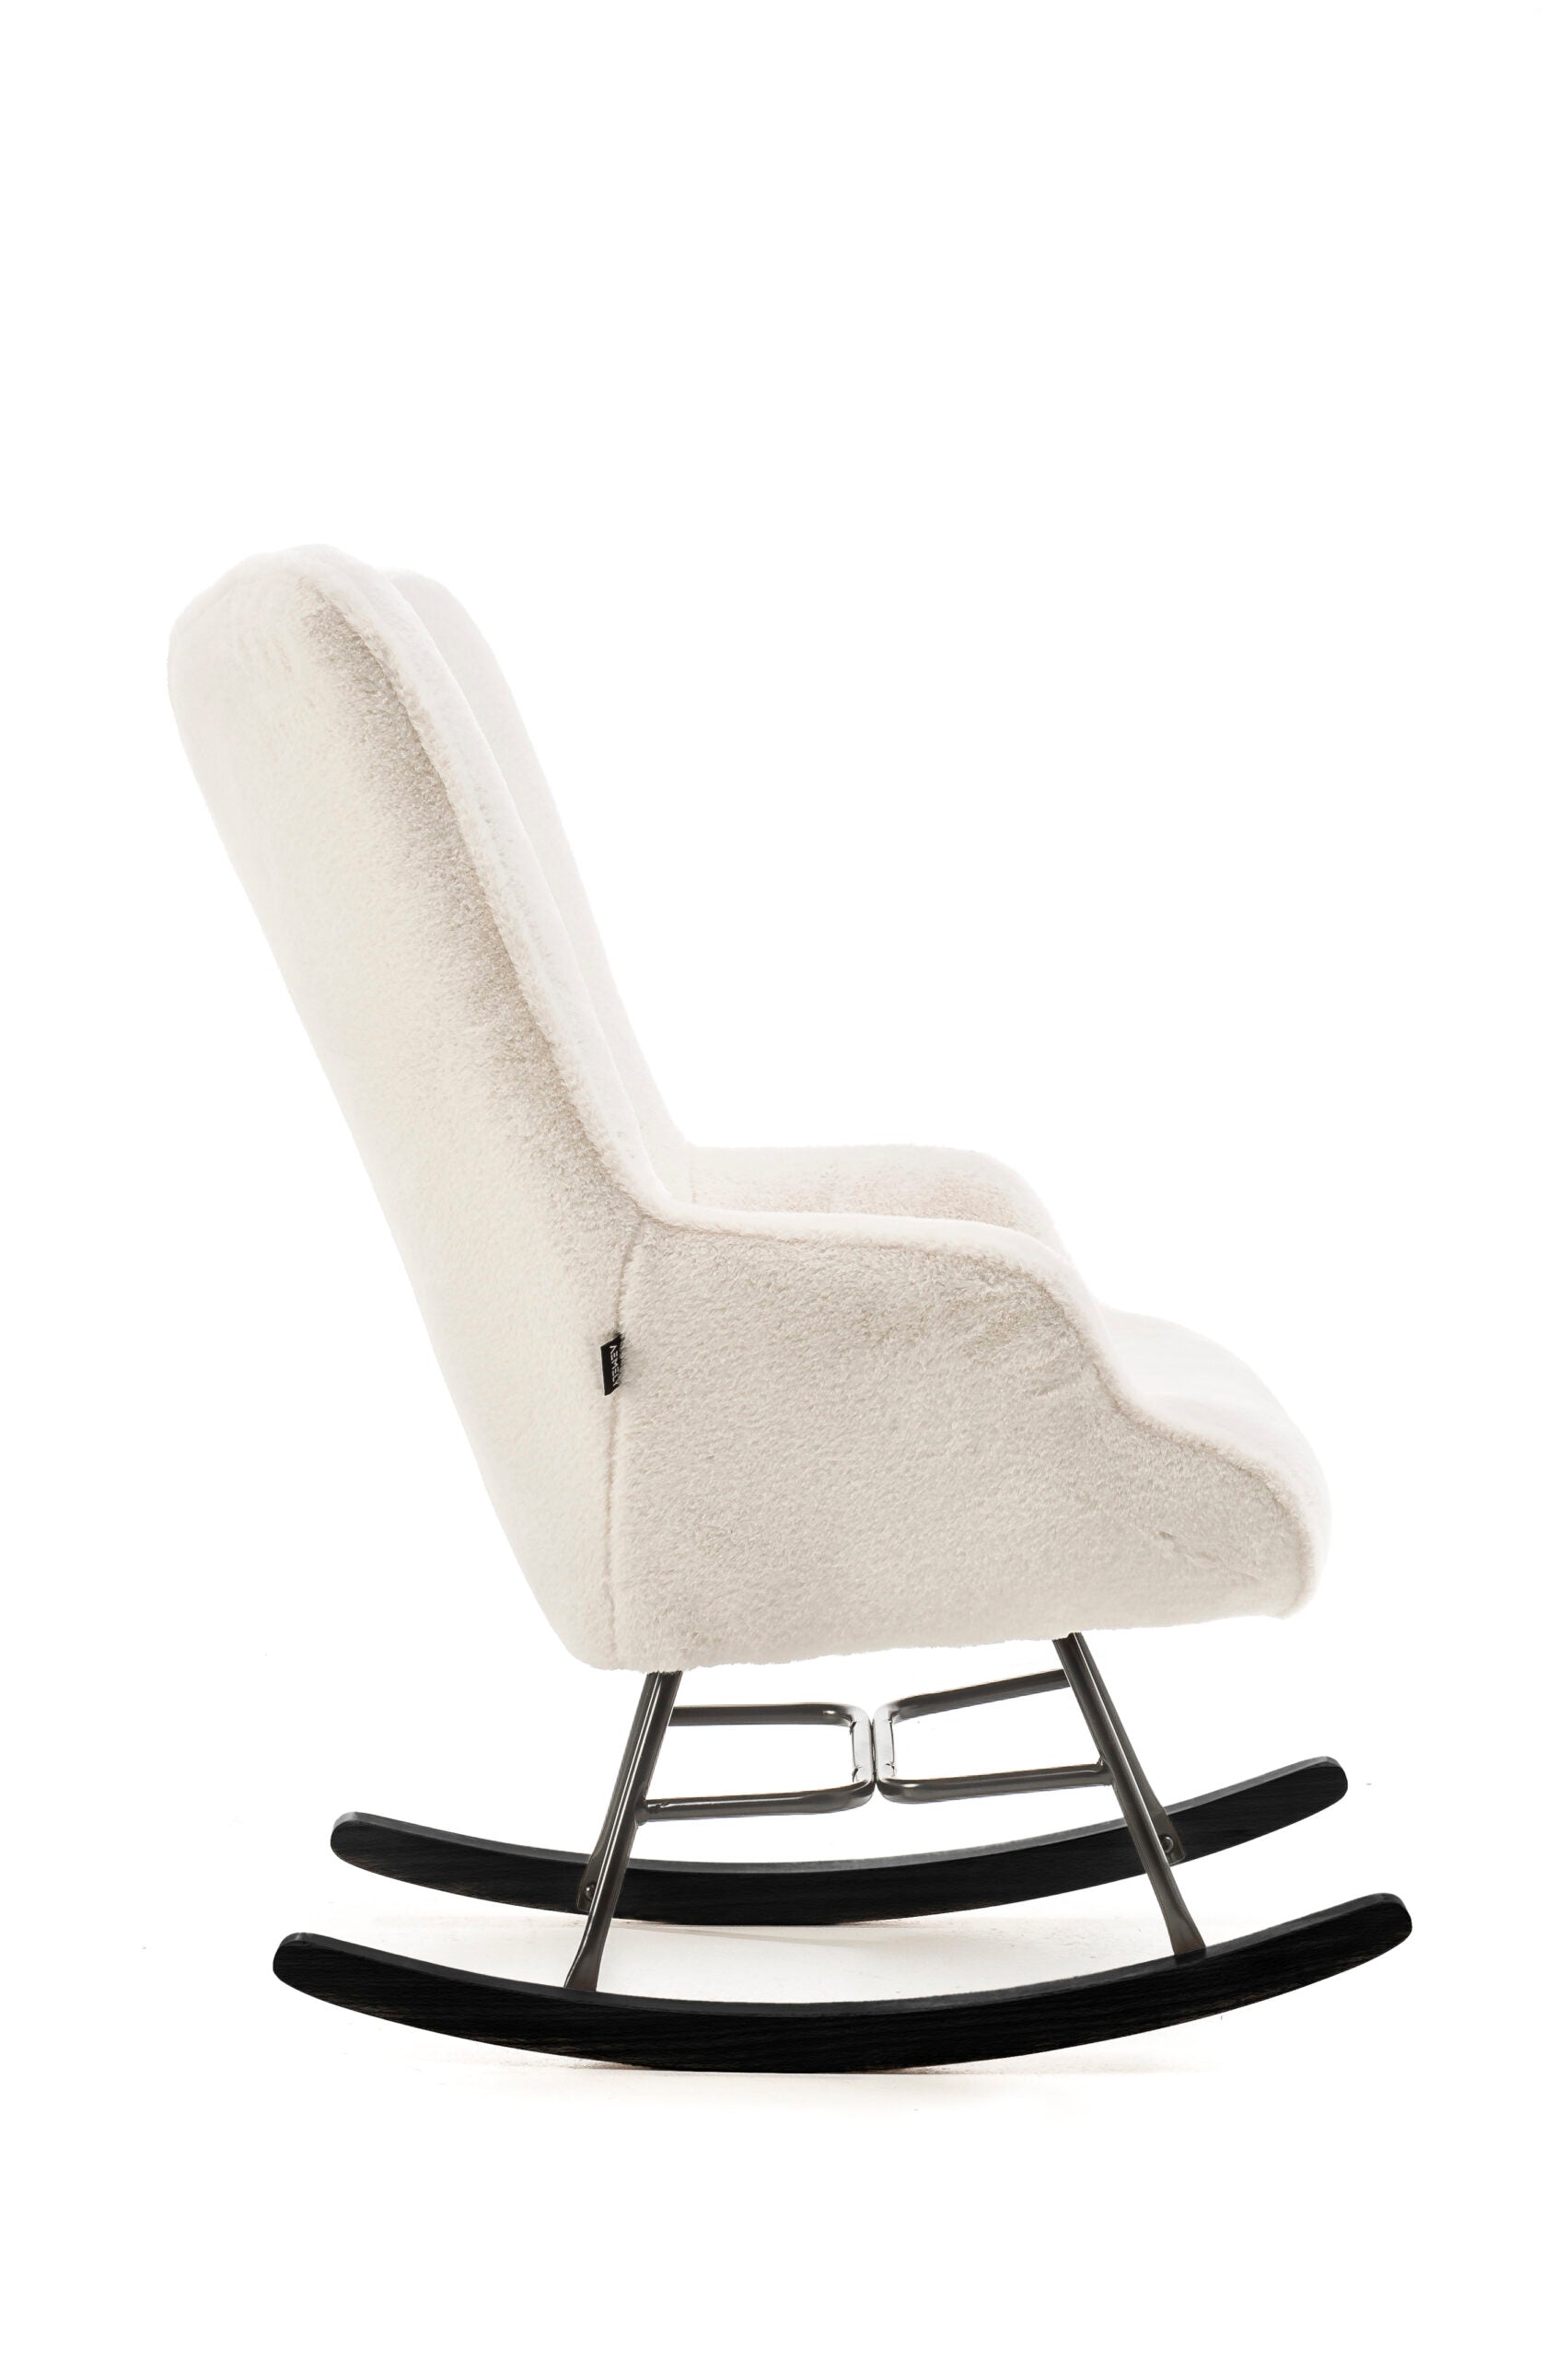 schommelstoel met witte imitatie bont en zwarte poten